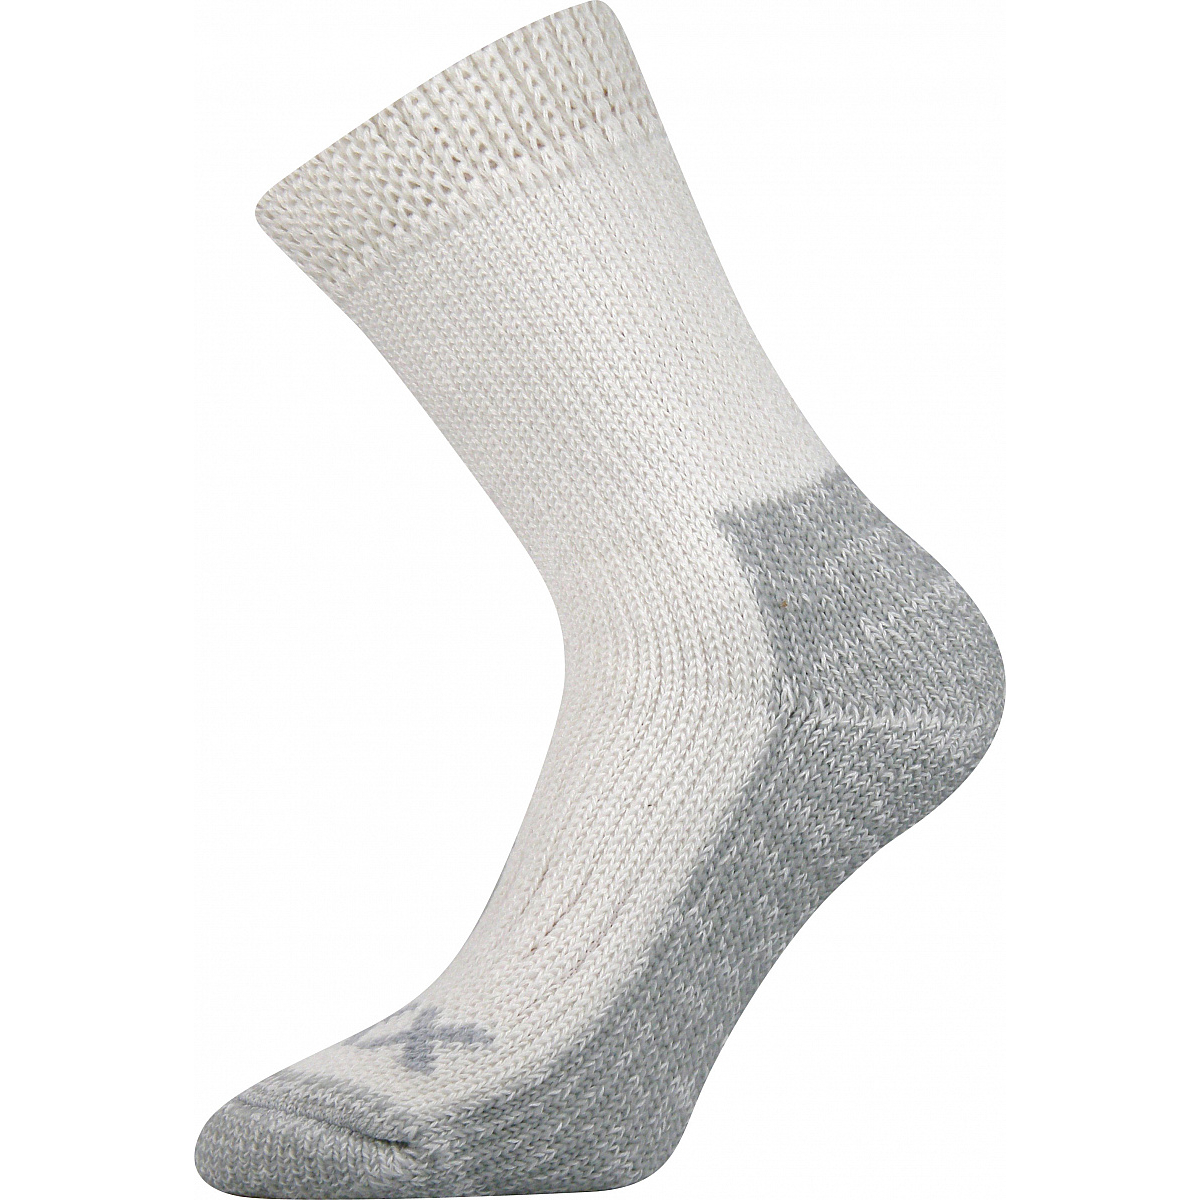 Extra teplé vlněné ponožky Voxx Alpin - bílé-šedé, 39-42